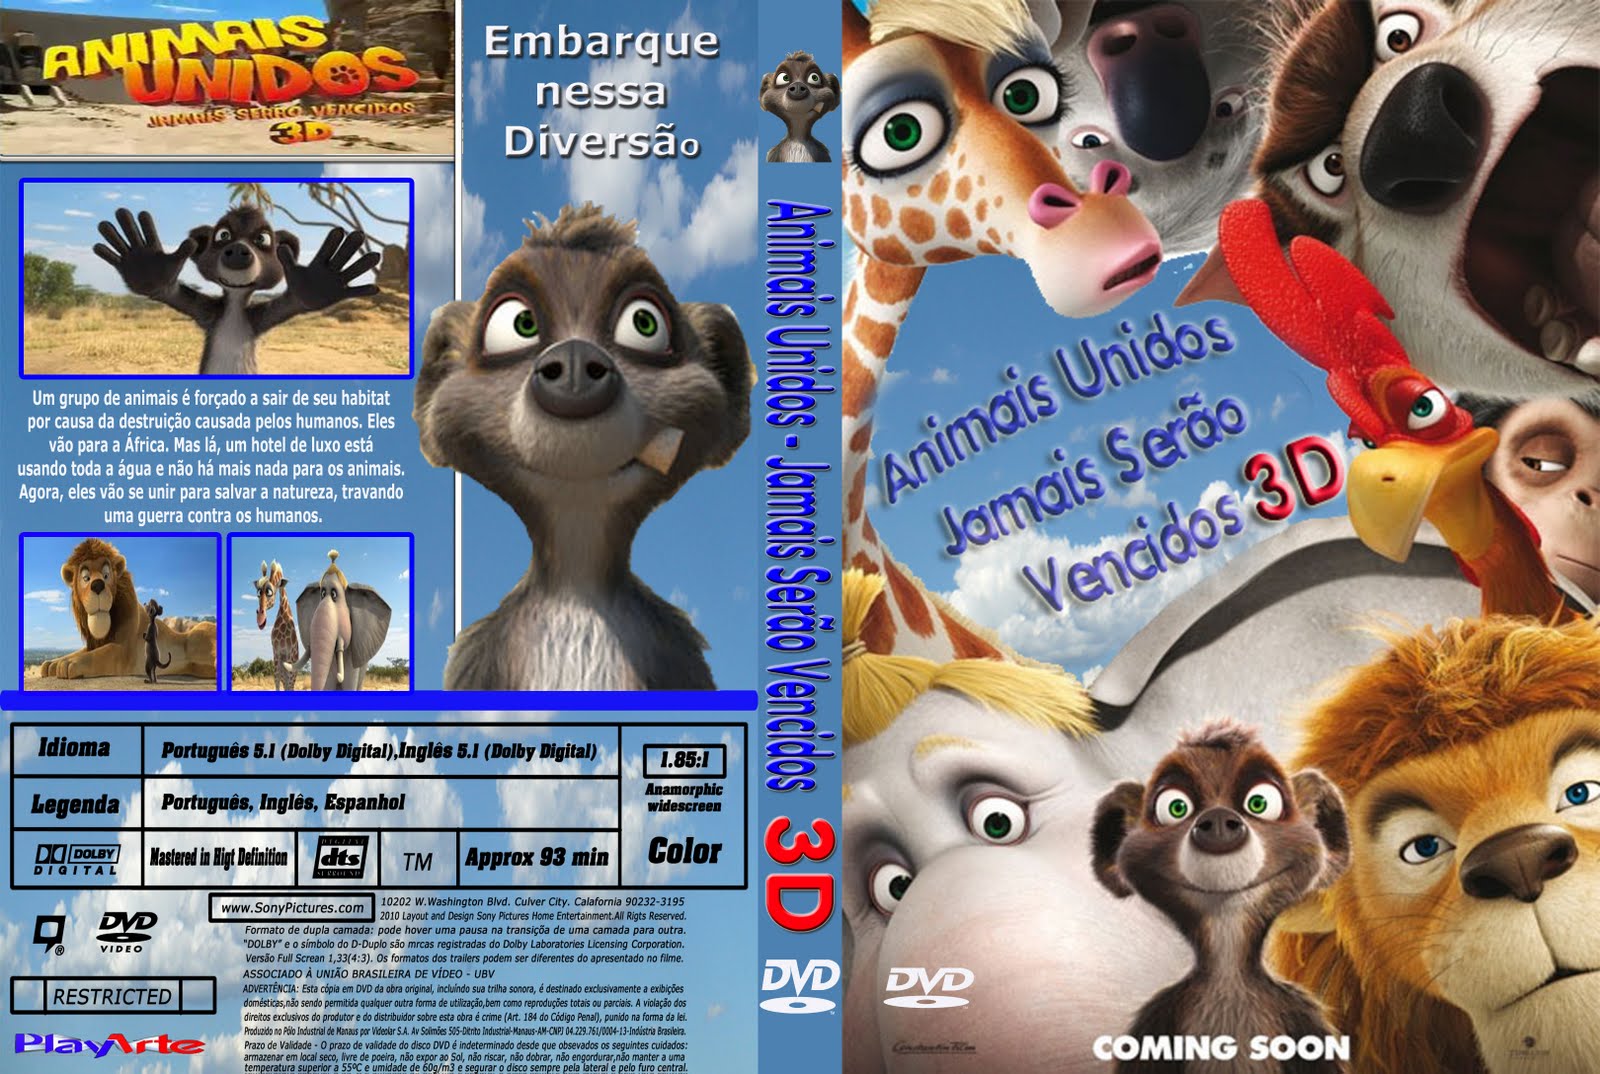 Animais Unidos - Jamais Serão Vencidos (Blu Ray )